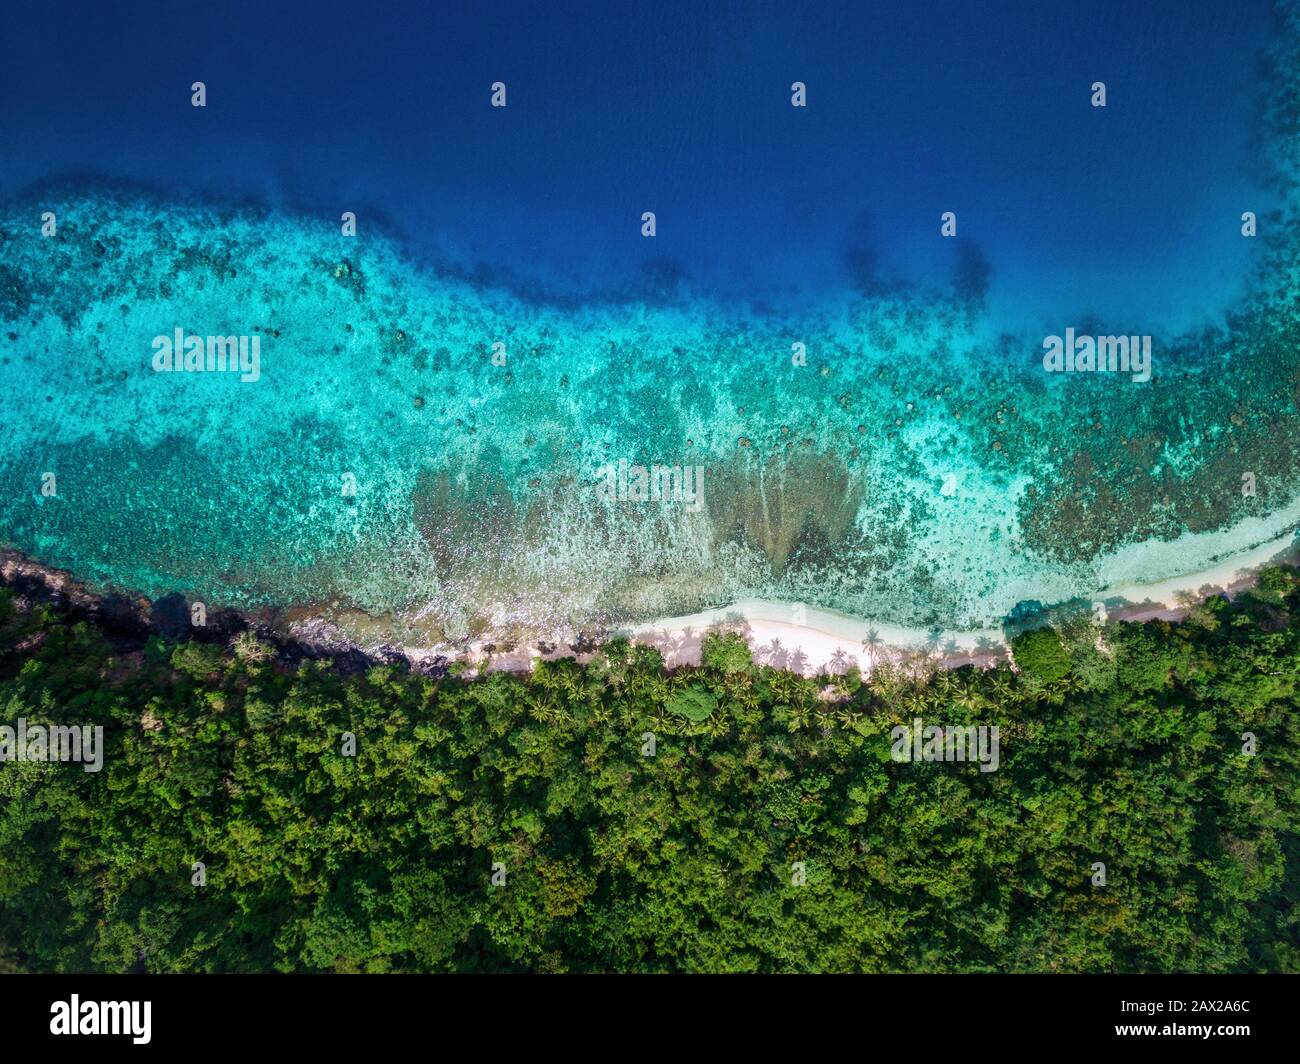 Paradiso tropicale dell'isola, vista aerea dall'alto dell'acqua turchese e della vegetazione lussureggiante da appartata spiaggia di sabbia bianca. Foto Stock